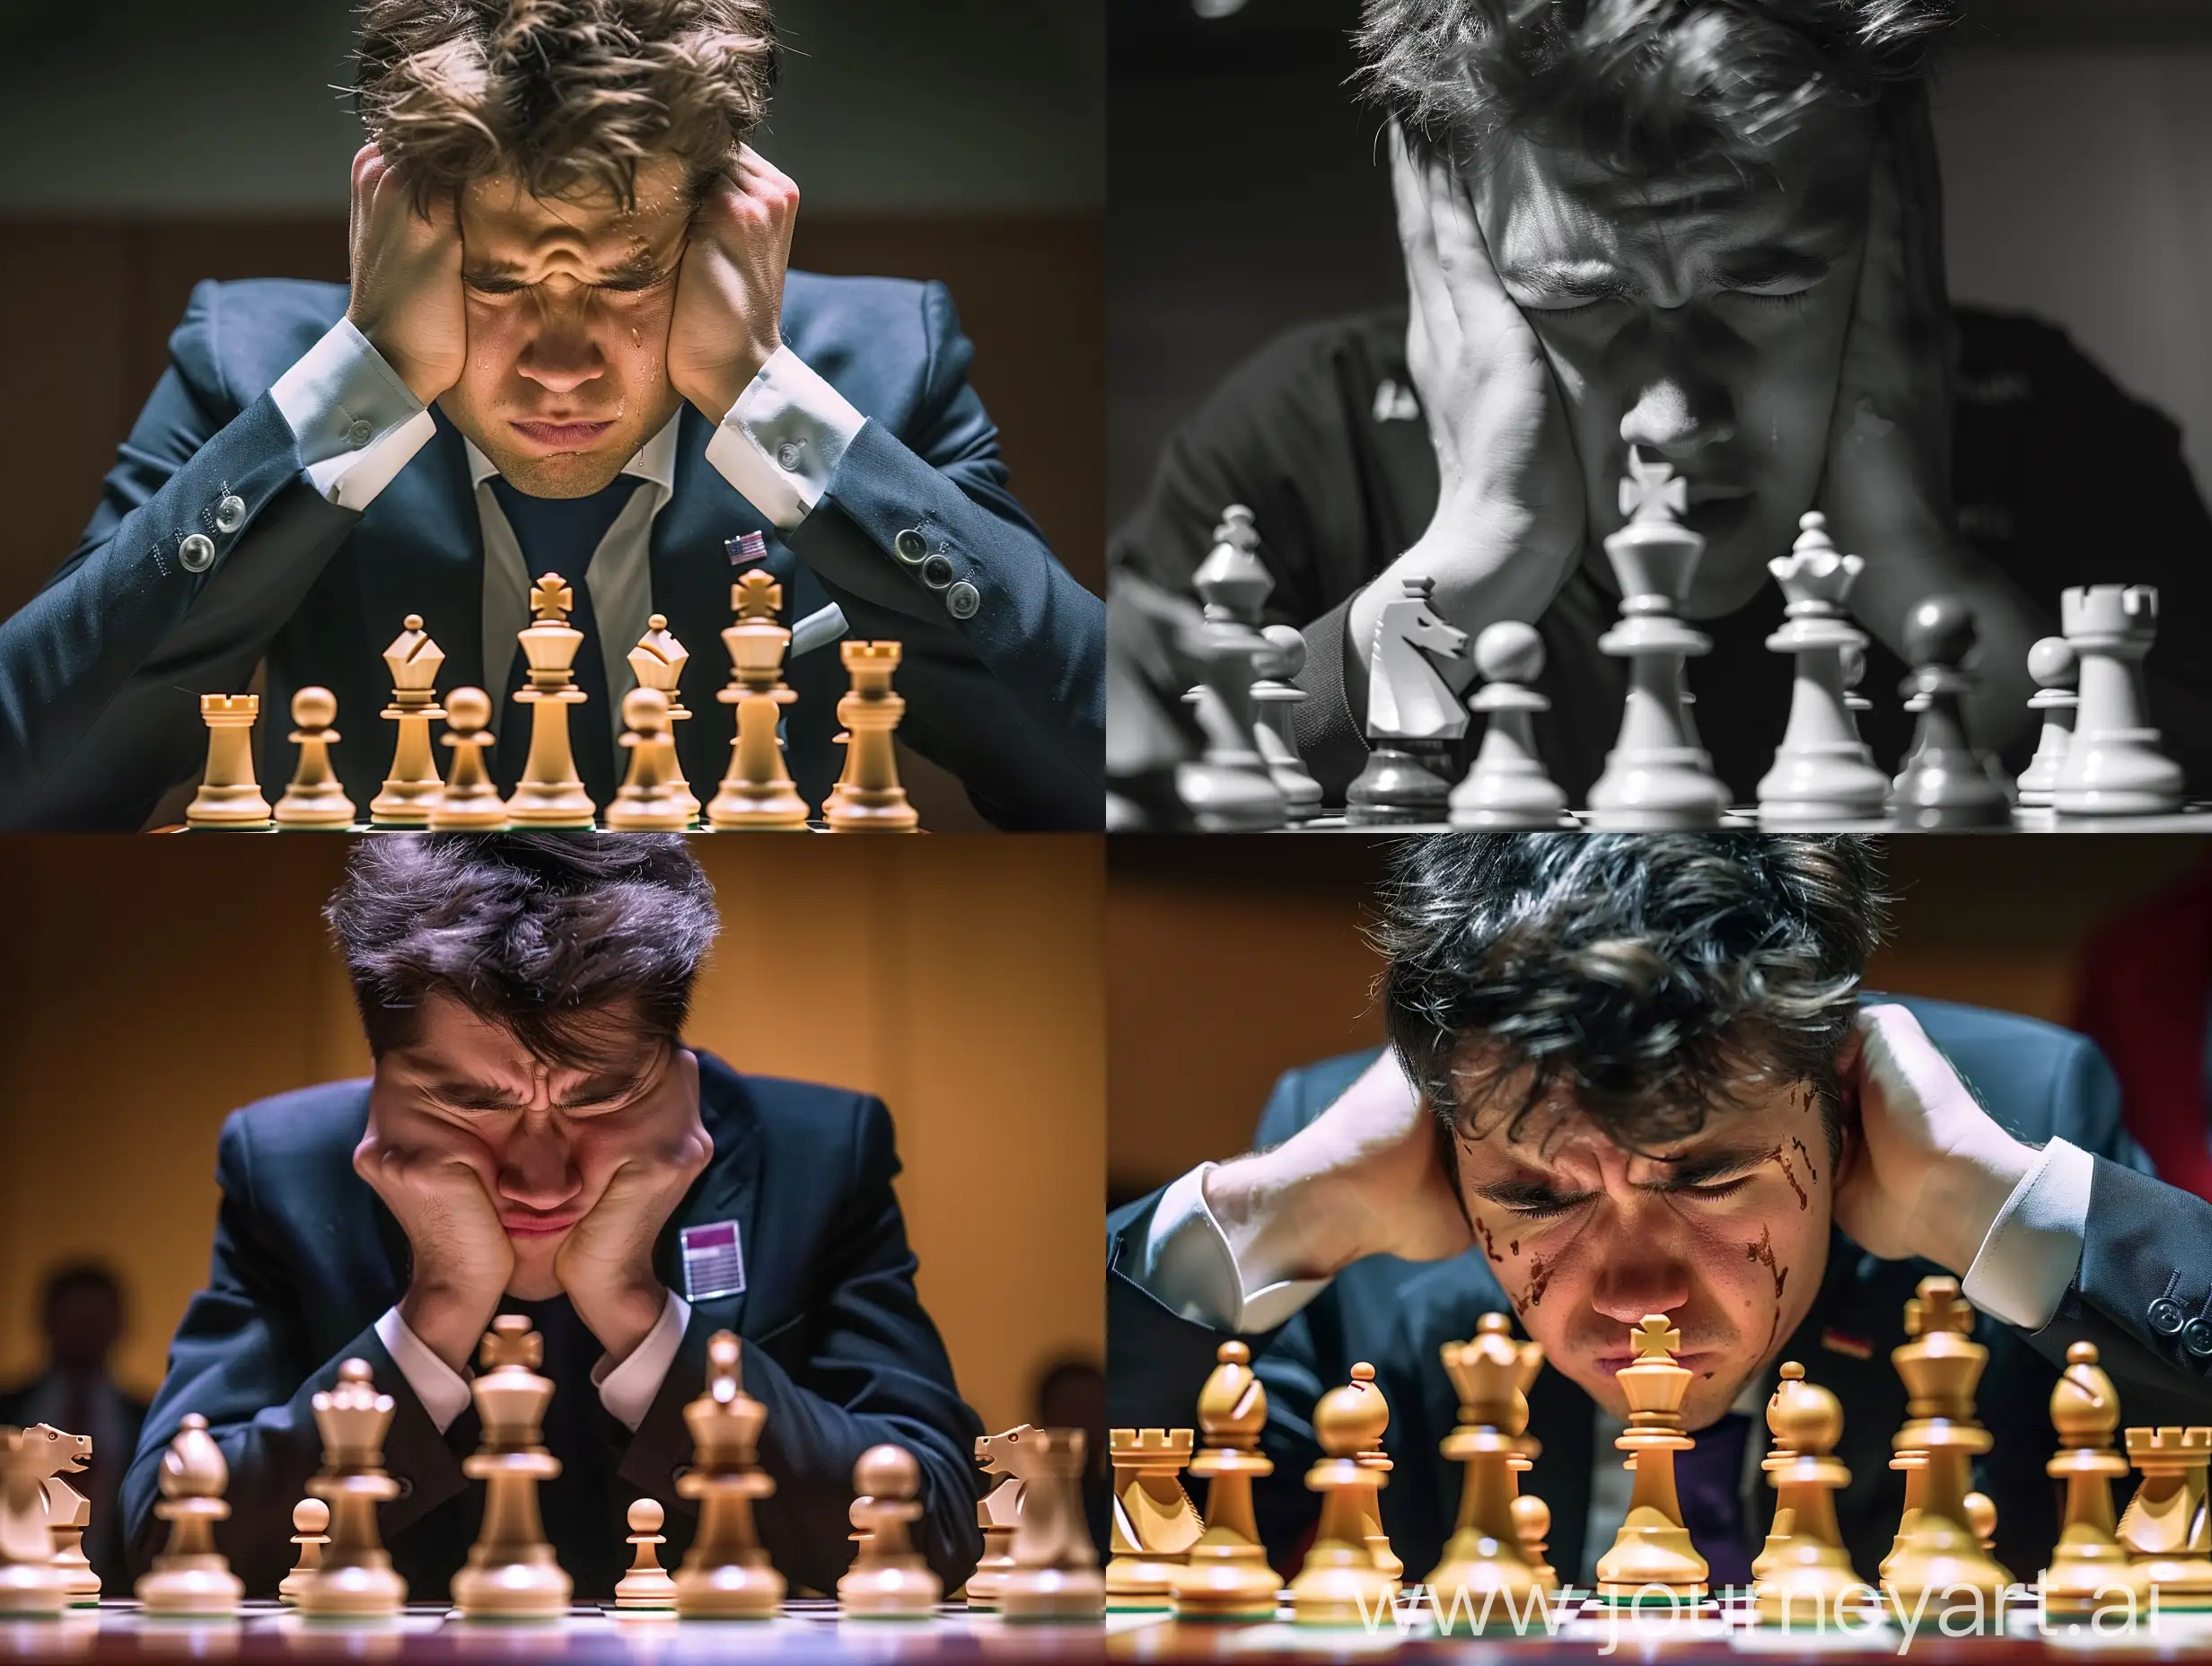 Hikaru-Nakamura-Emotional-Upset-in-Chess-Match